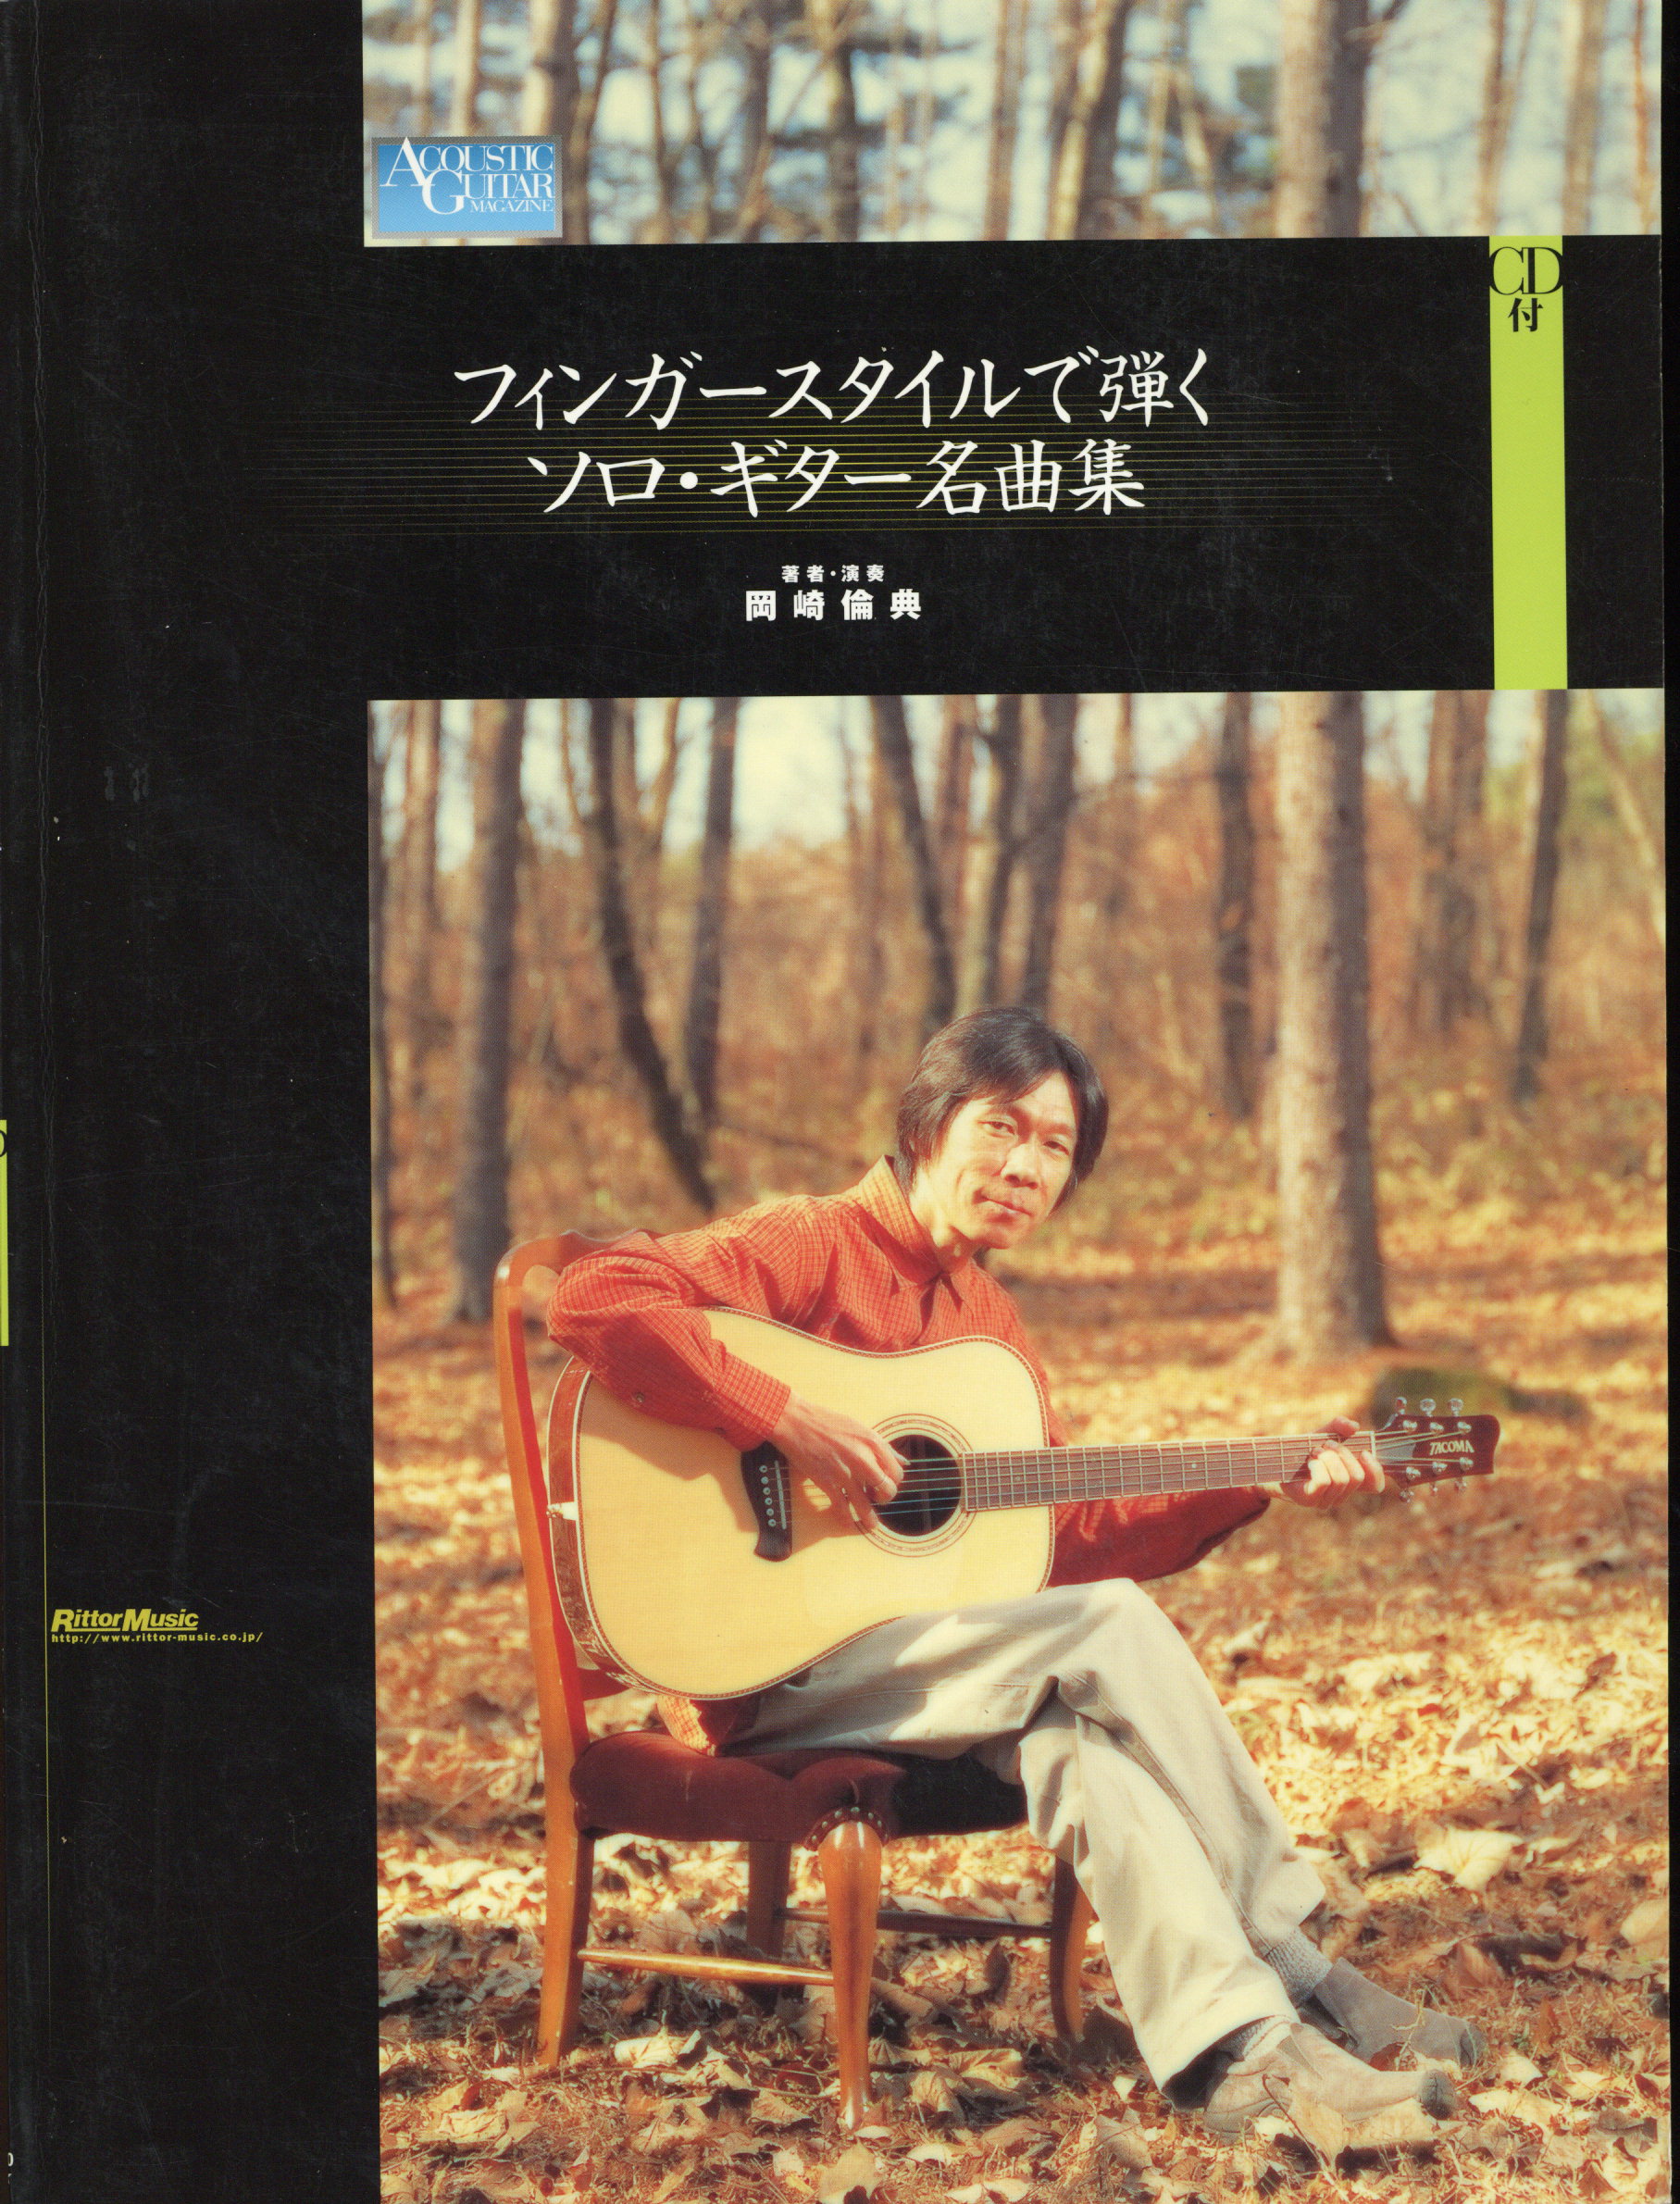 フィンガースタイルで弾くソロ・ギター名曲集 岡崎倫典 本 模範演奏CD 